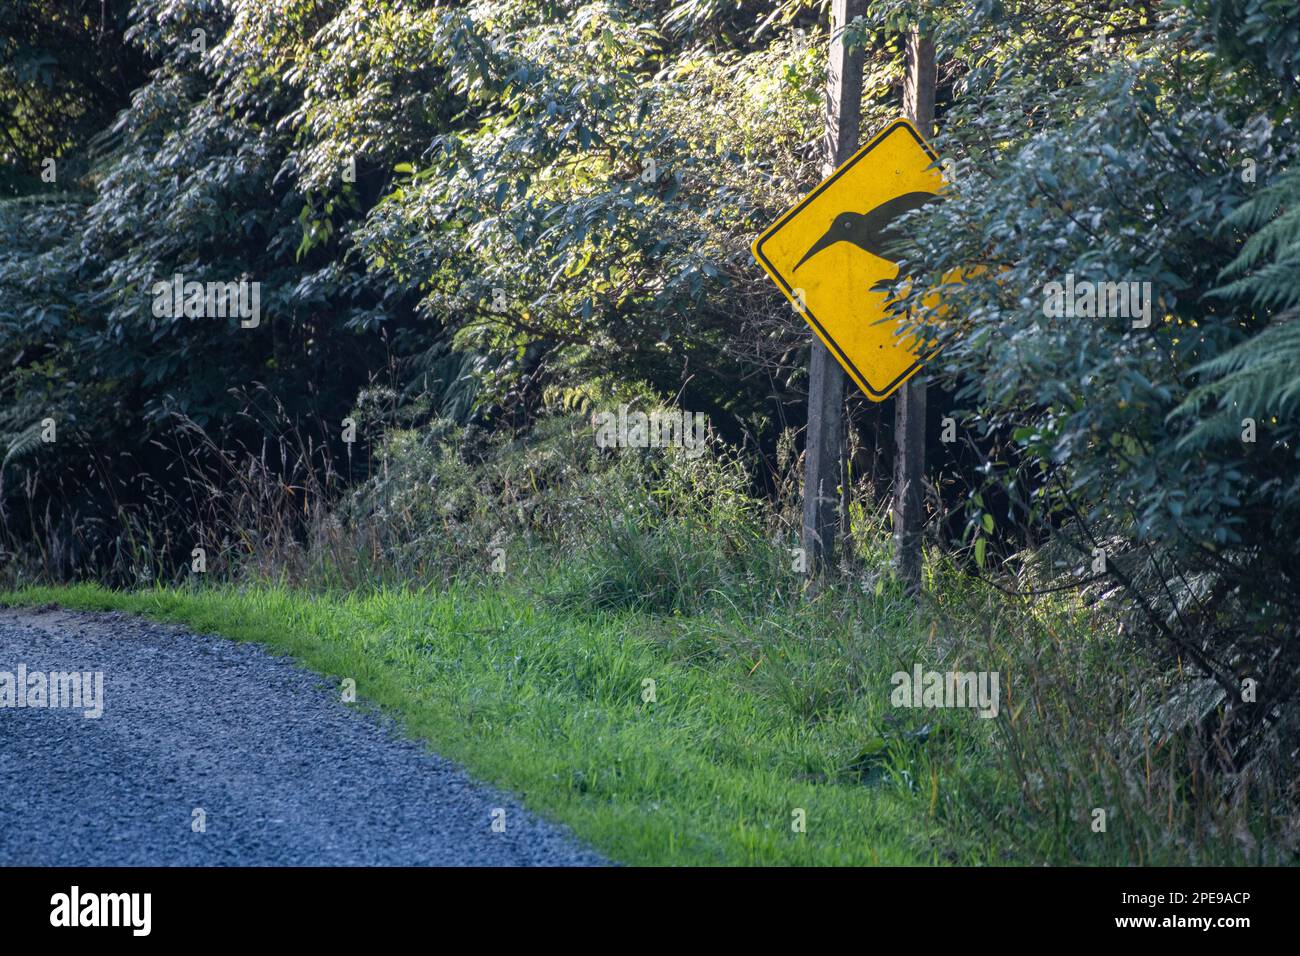 Ein gelbes Kiwis-Schild warnt Fahrer vor Wildtieren, die die Straße überqueren. Stockfoto